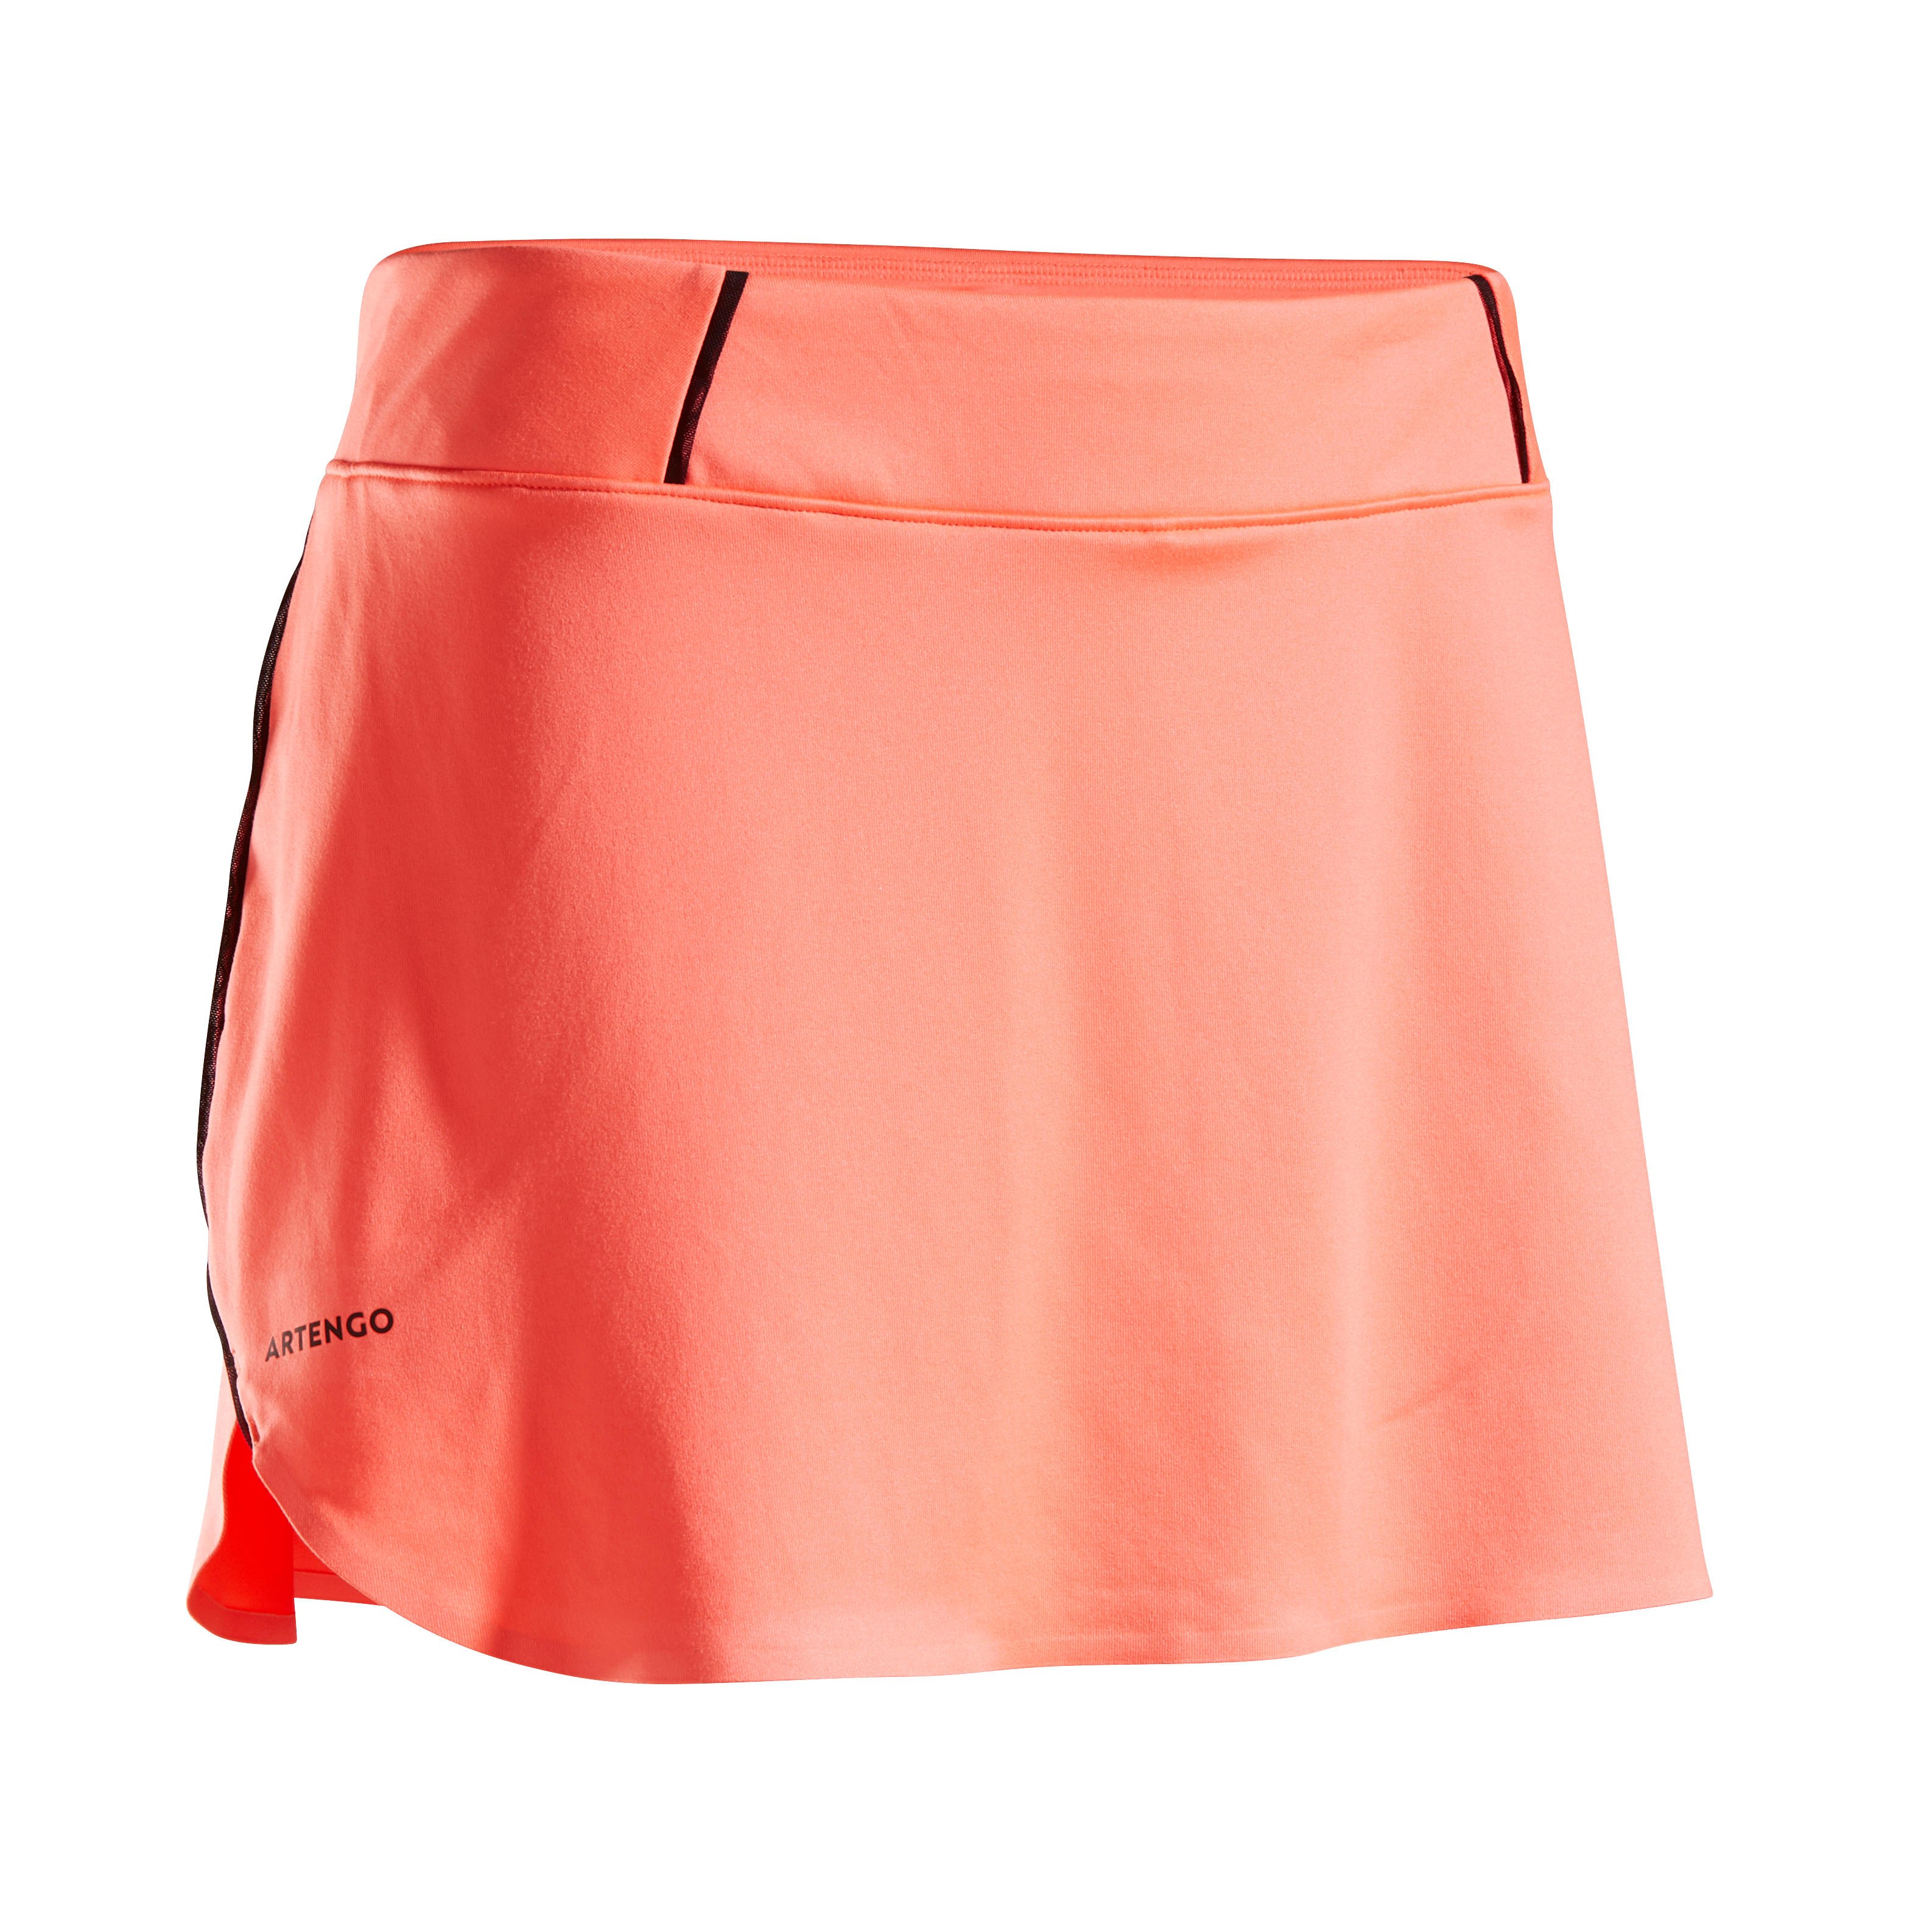 Comprar Faldas de Mujer Deportivas online | Decathlon